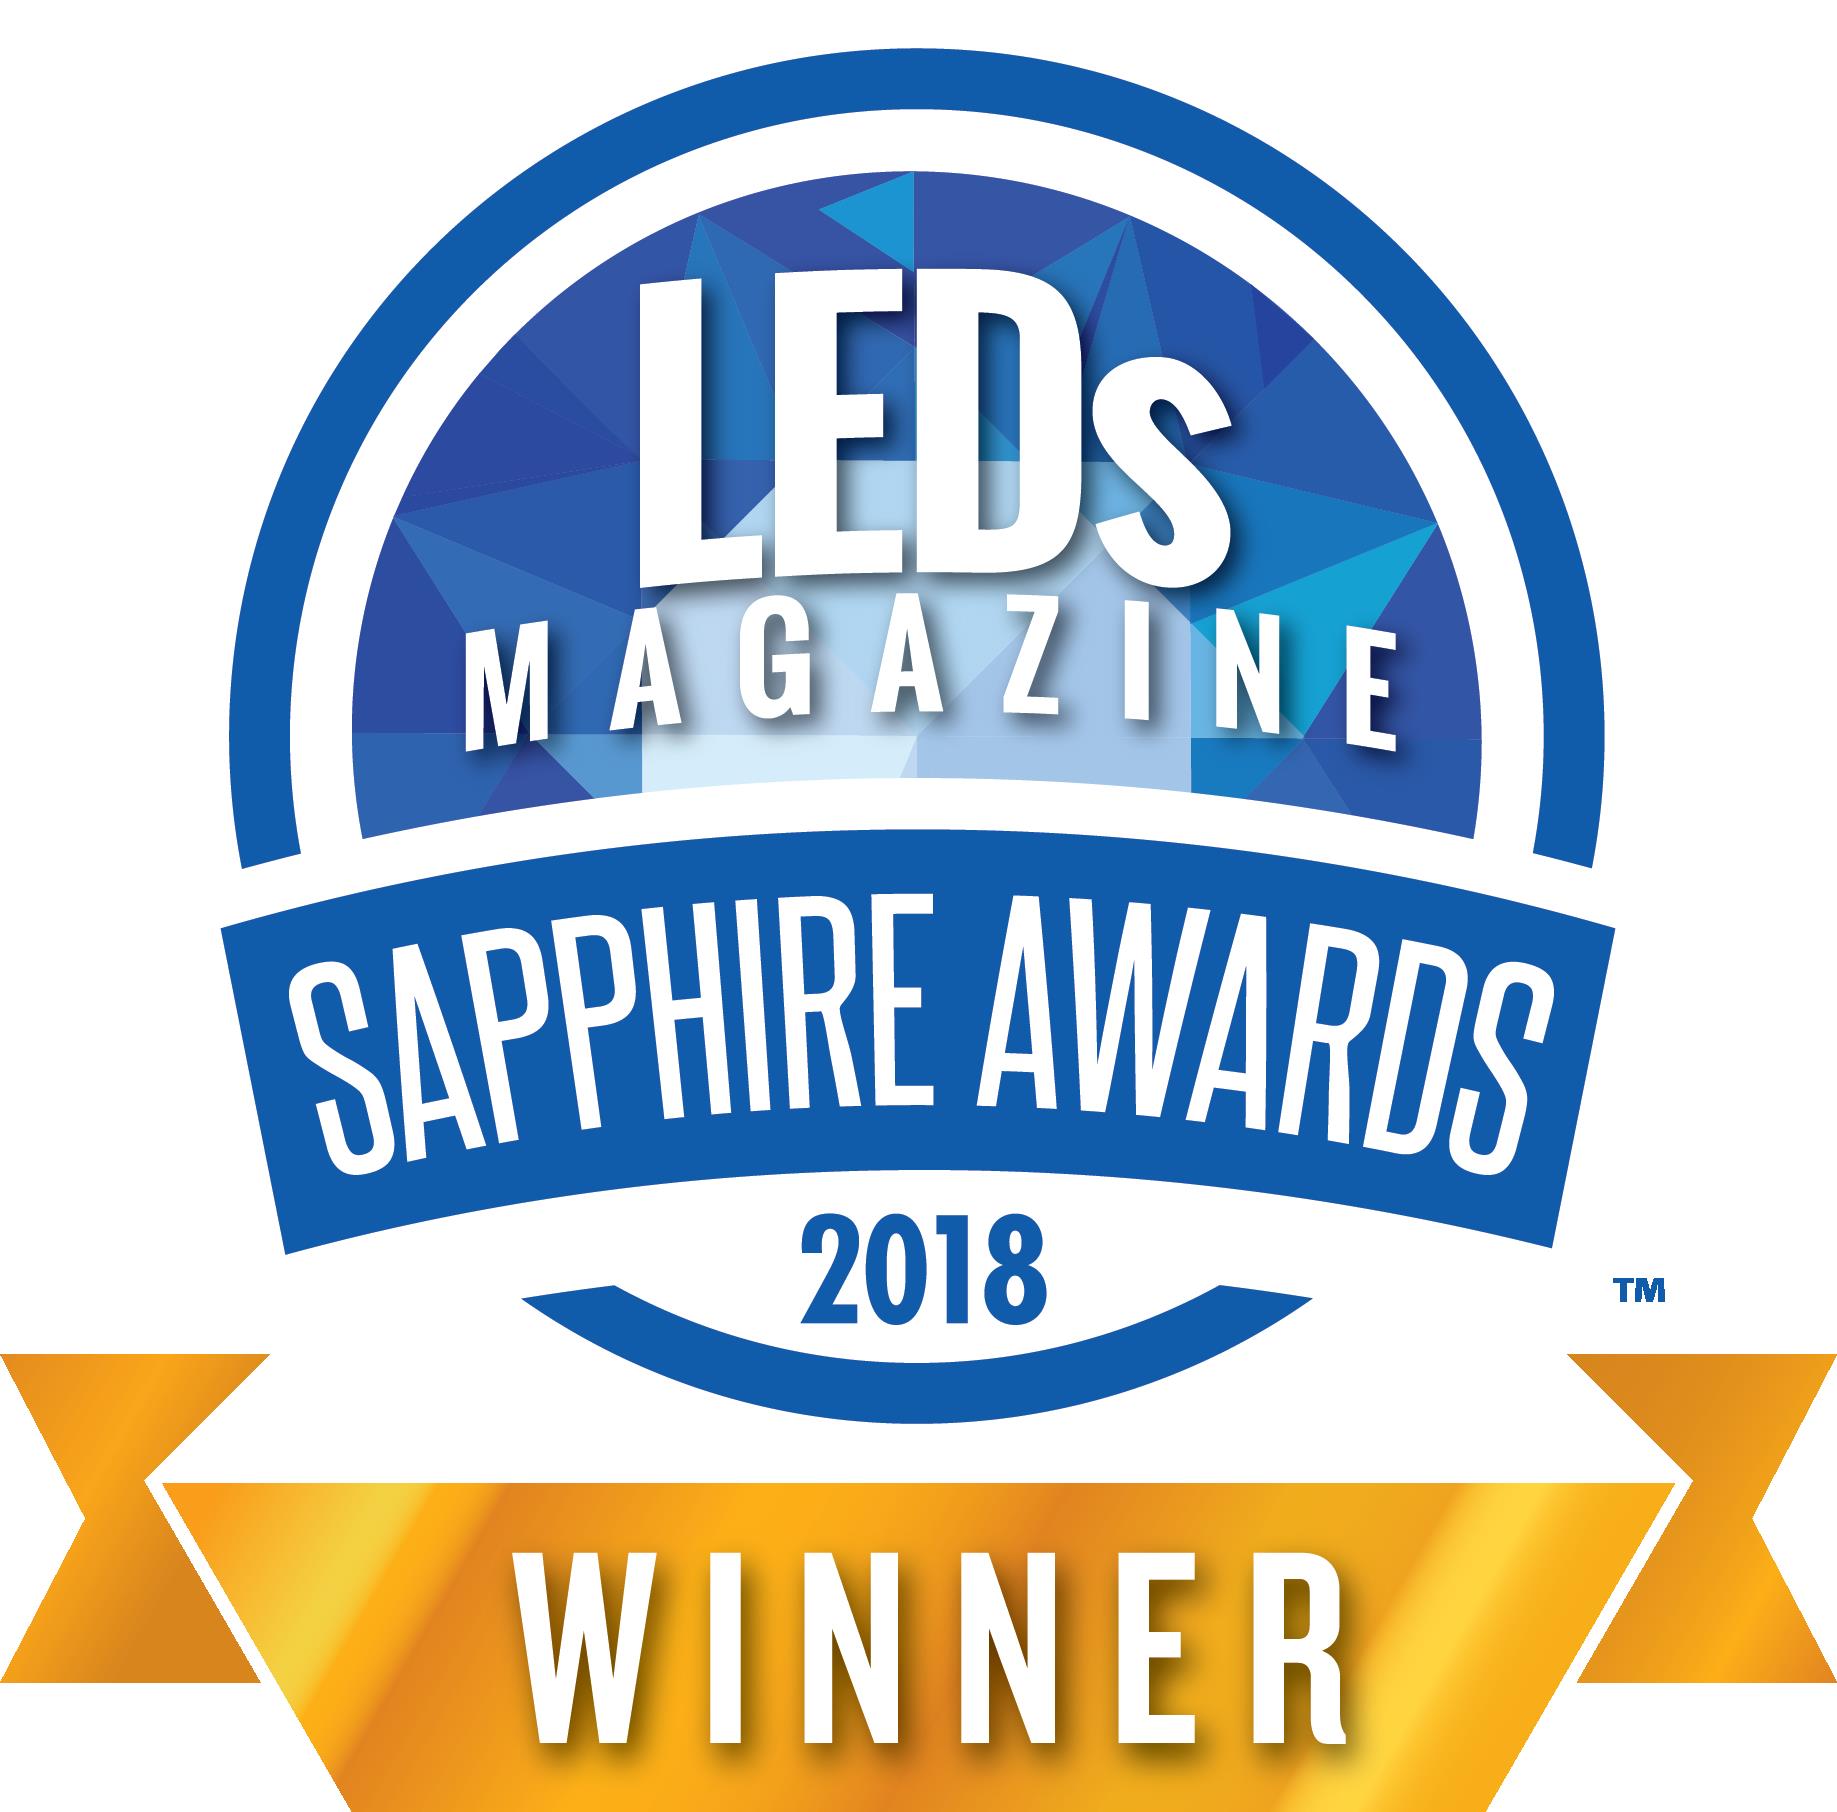 Sapphire award logo 2018